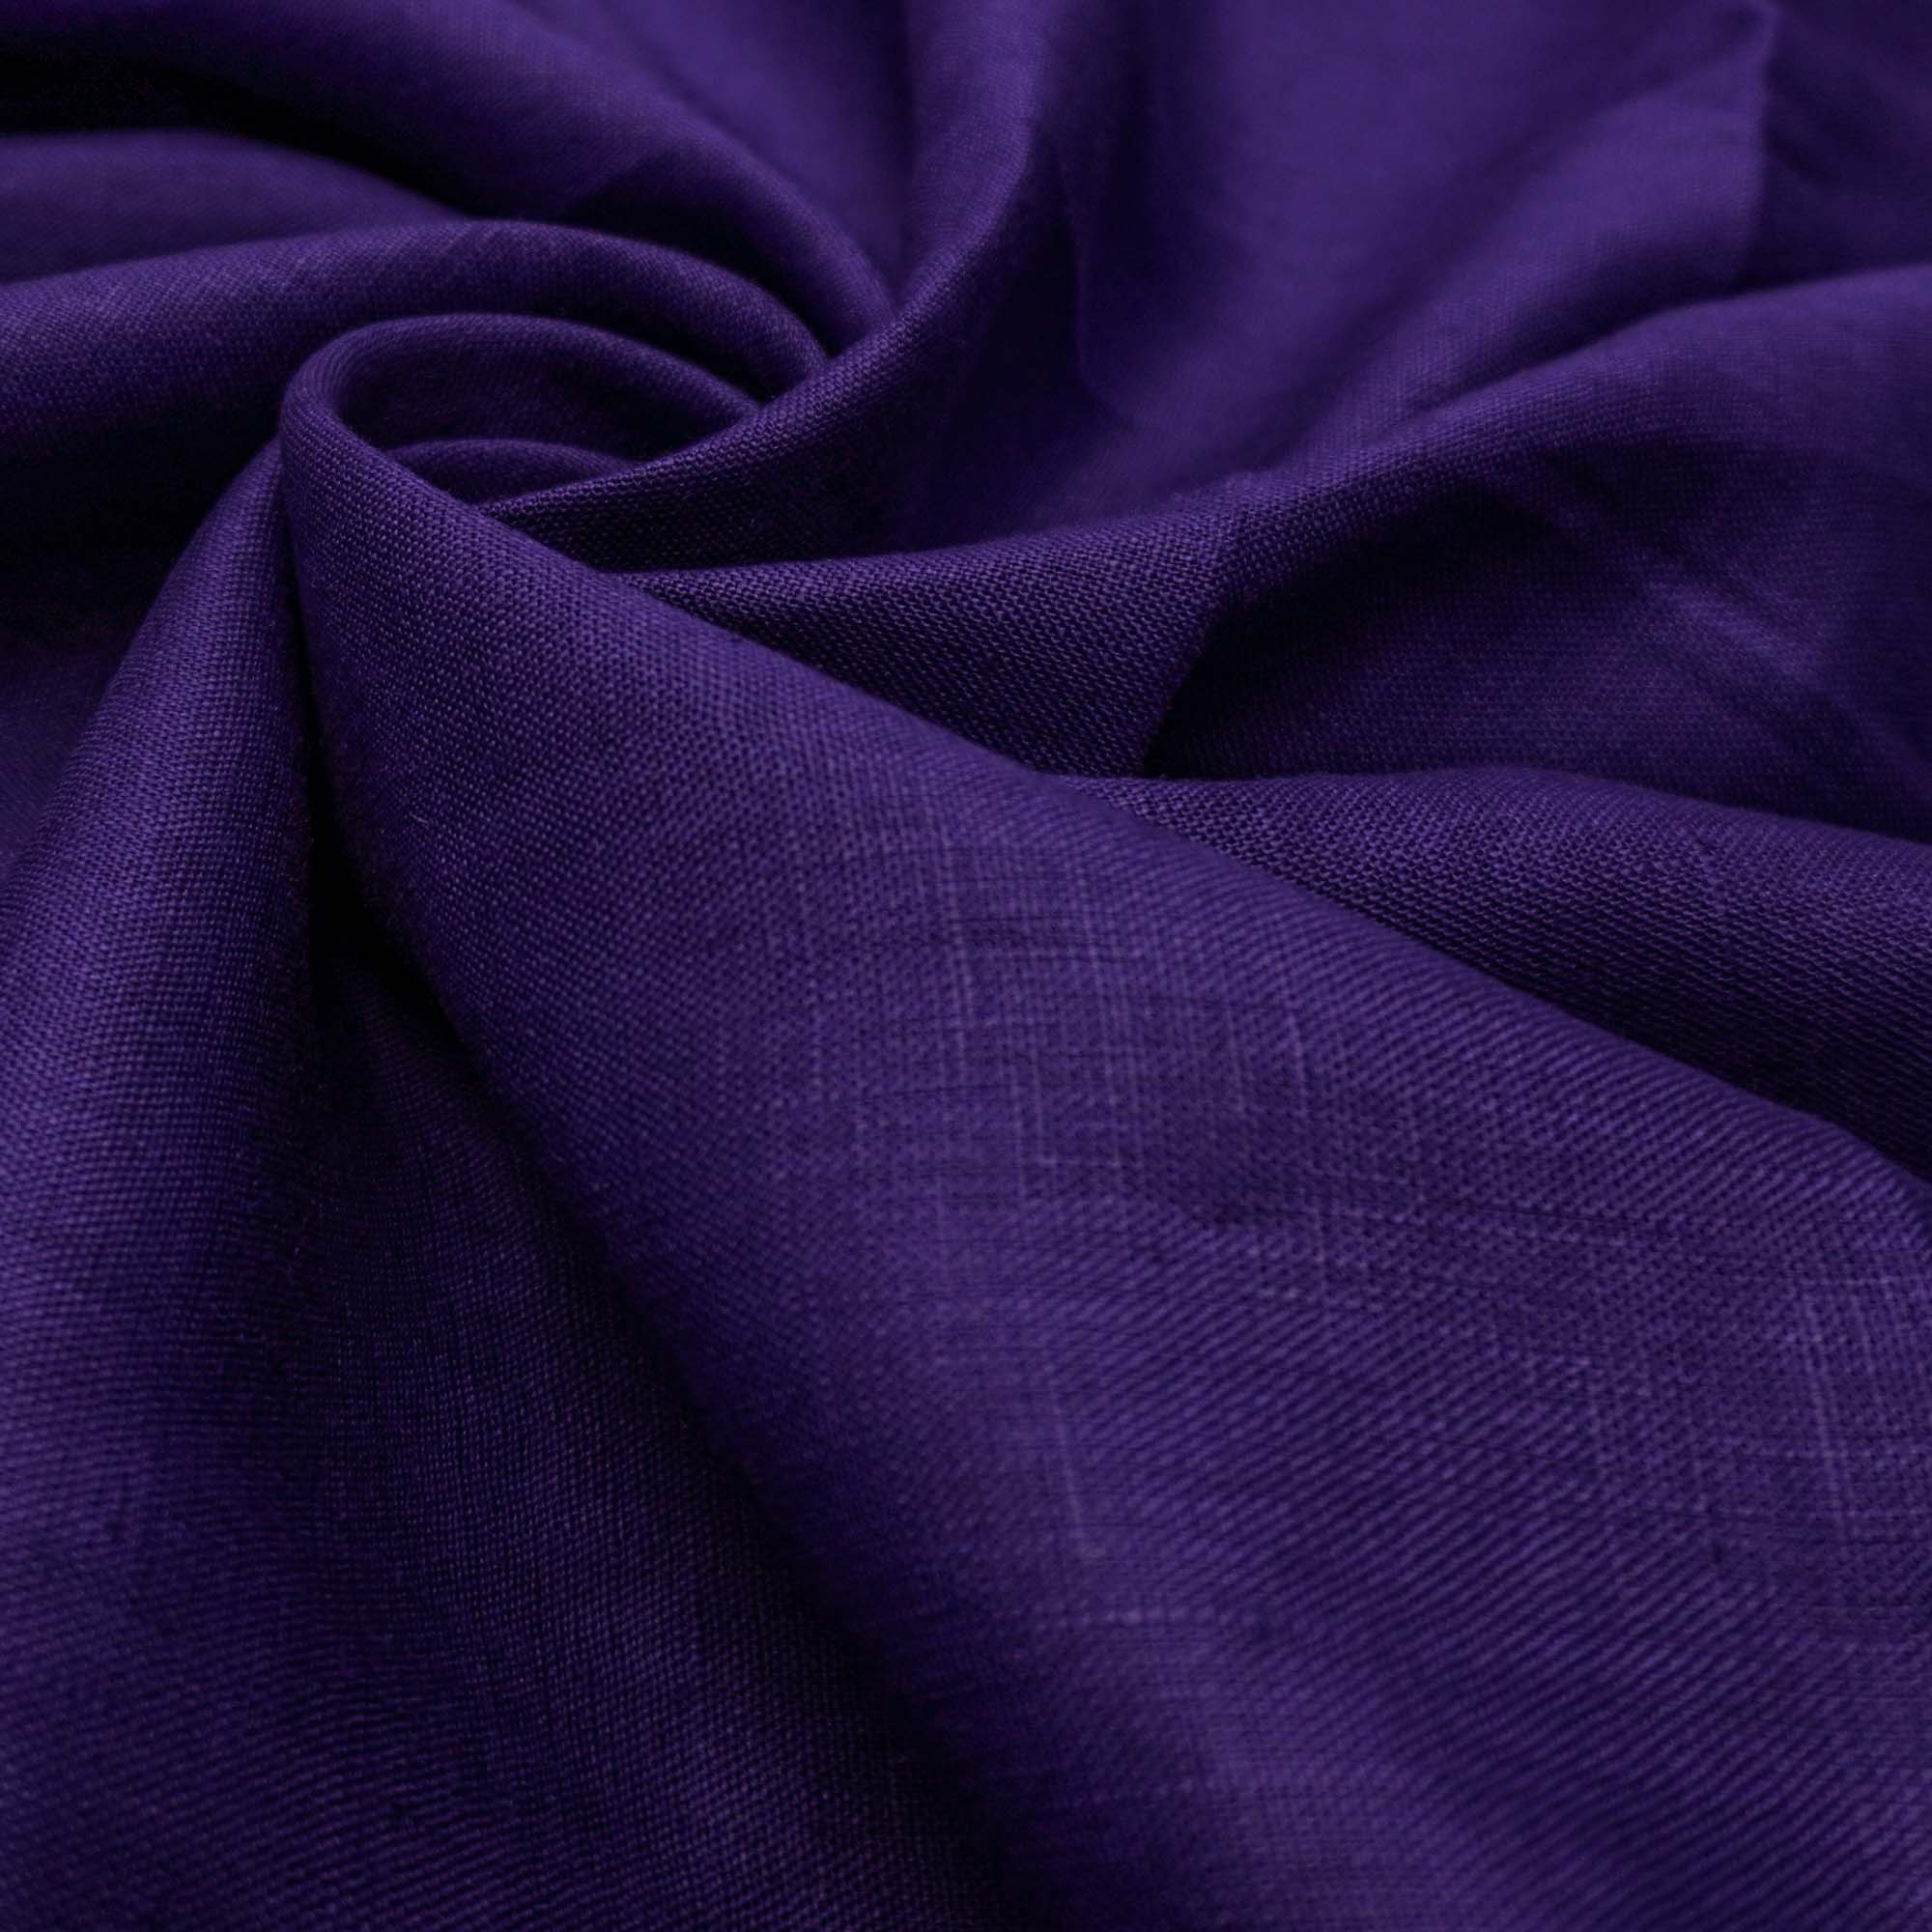 Tecido linho puro violeta